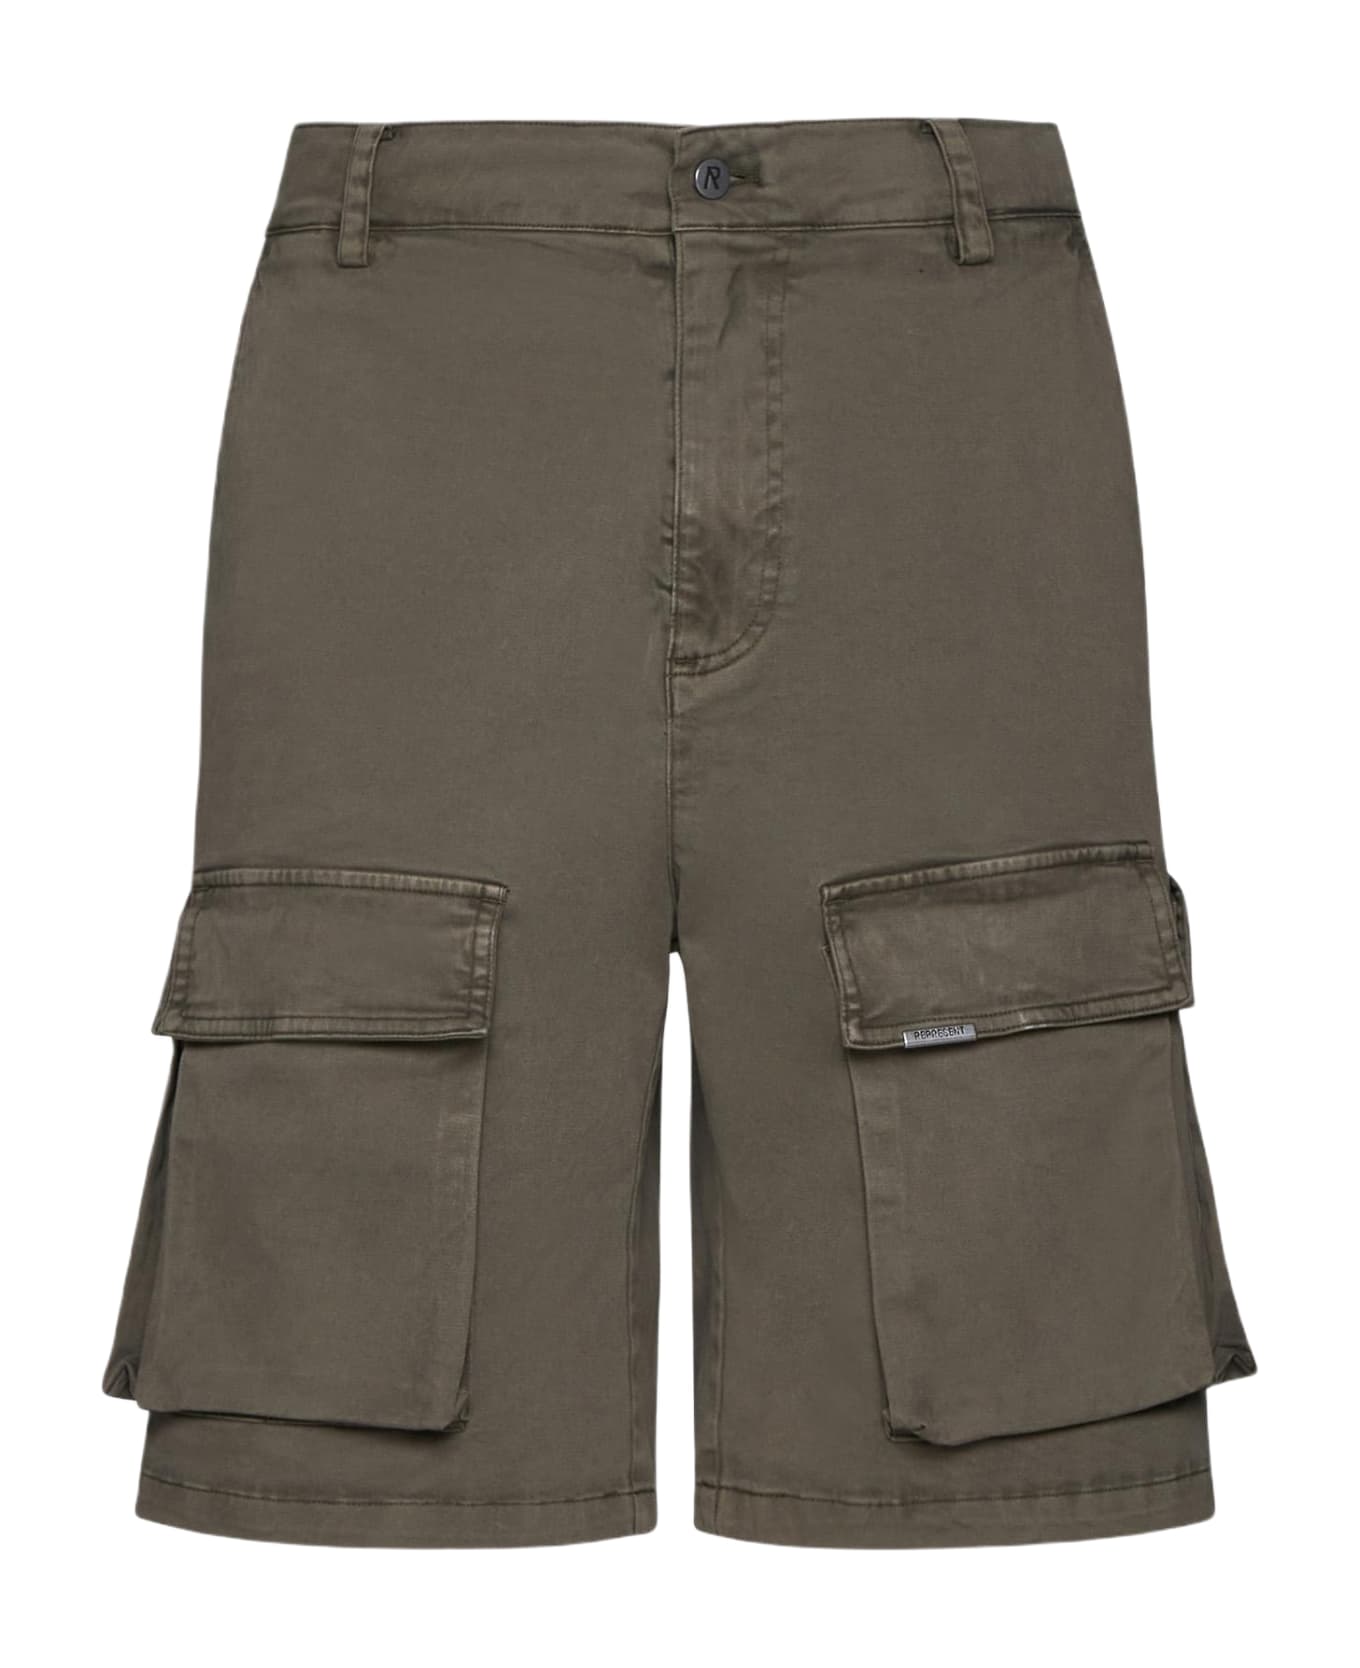 REPRESENT Cotton Cargo Shorts Shorts - DAWN